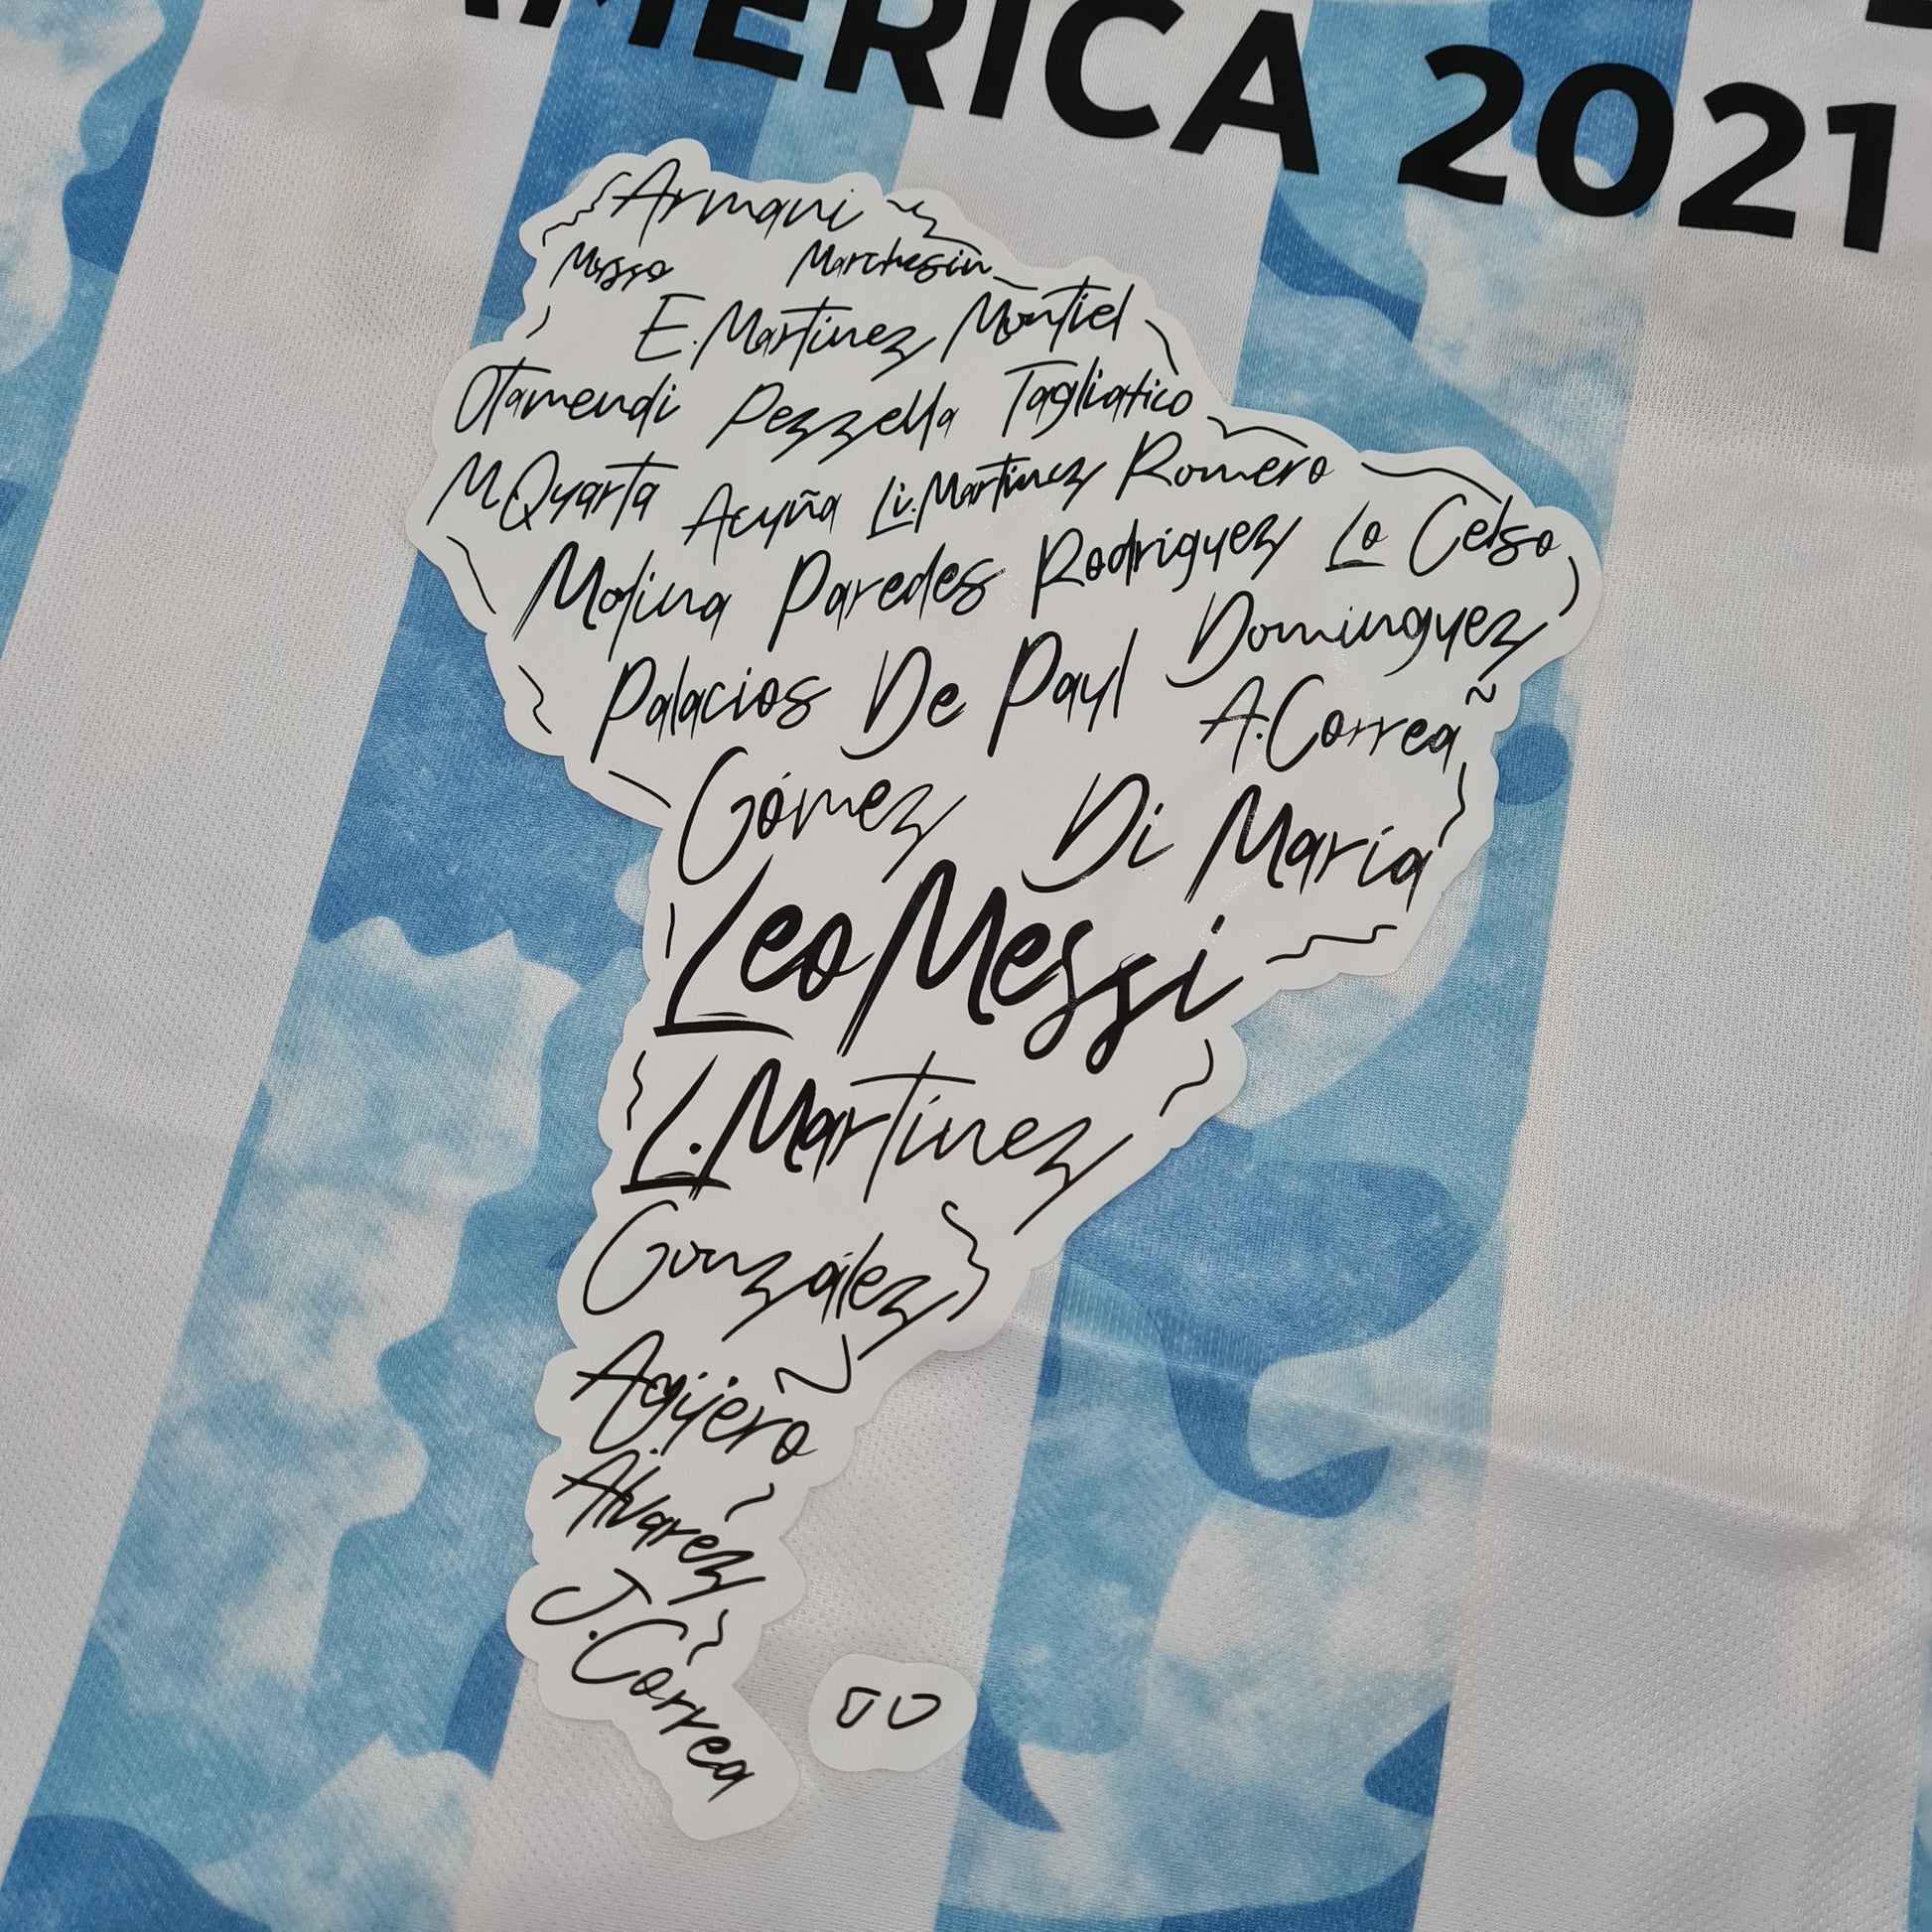 Argentina Campeón Copa América 2021 - Thunder Internacional